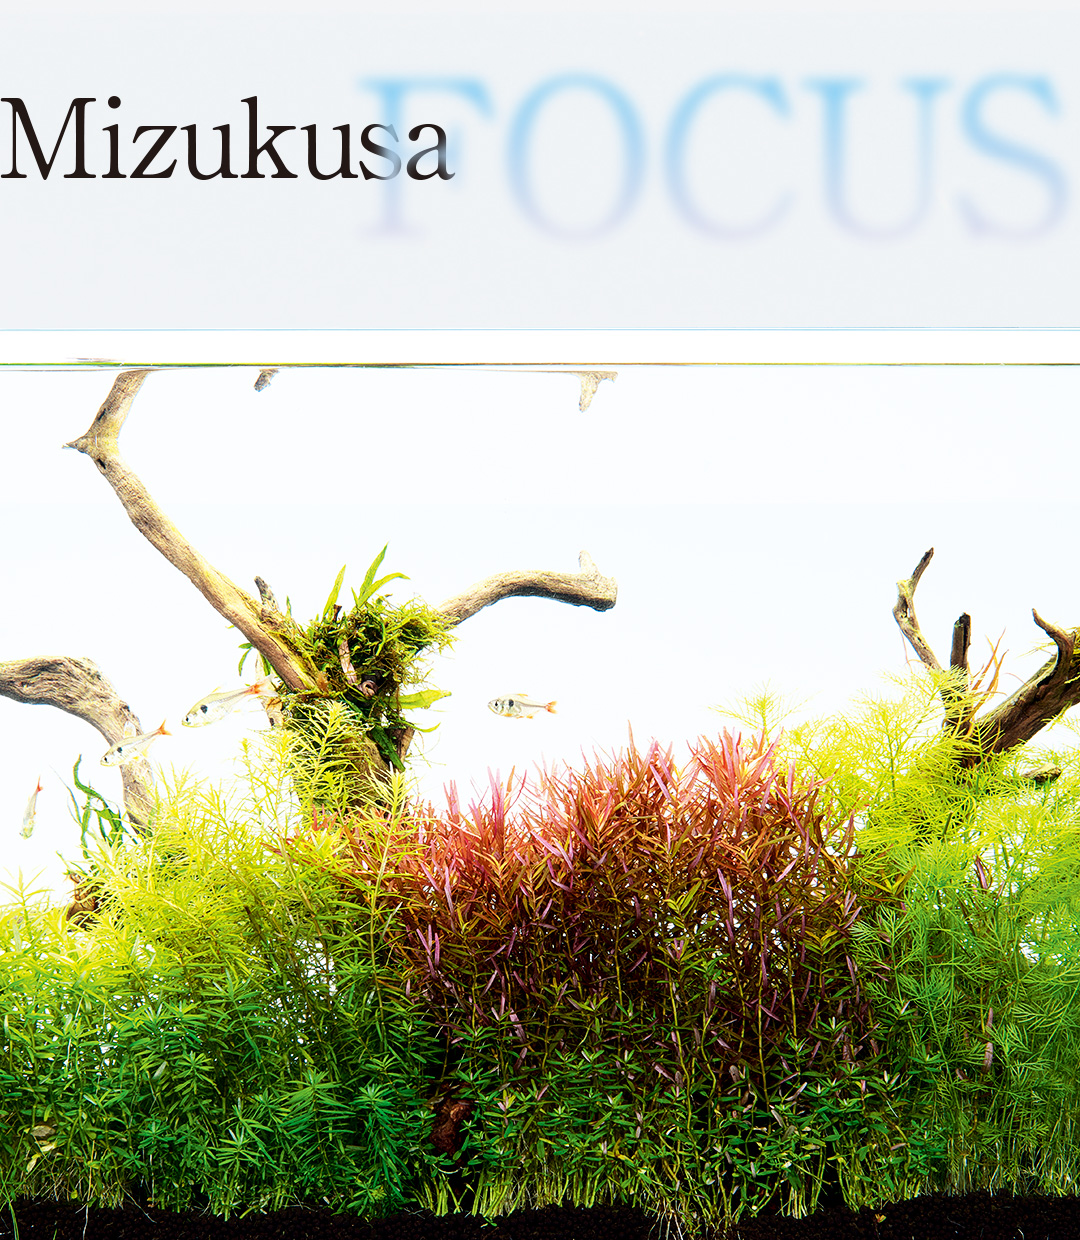 MIZUKUSA FOCUS “Mizukusa no Mori Growth Comparison”